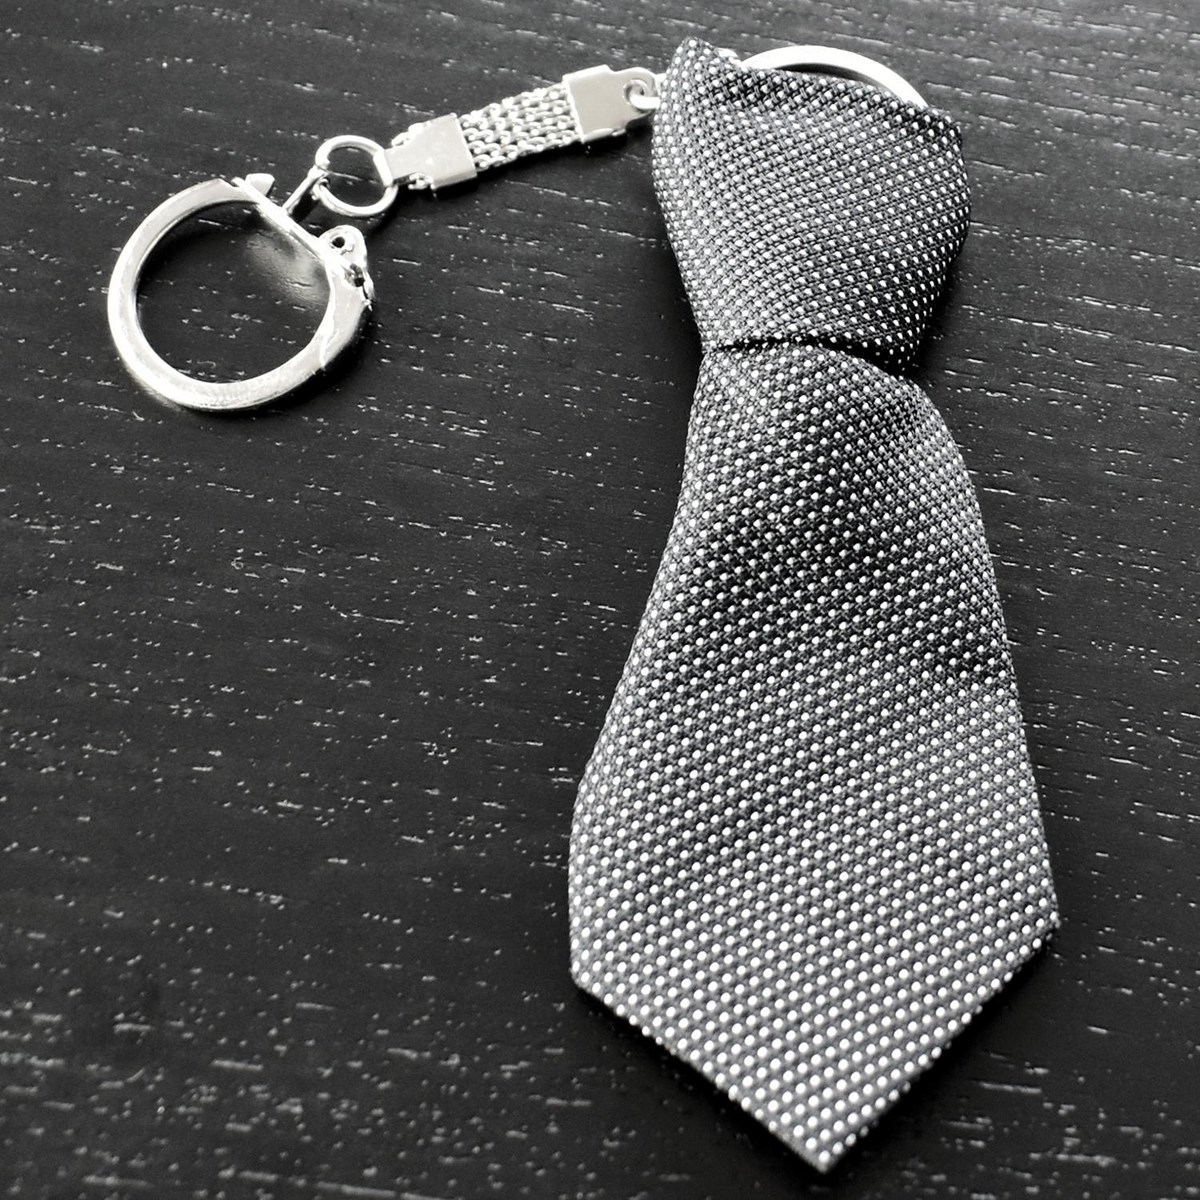 Porte-clés cravate en tissu moucheté pois blanc sur noir argenté - vue 3